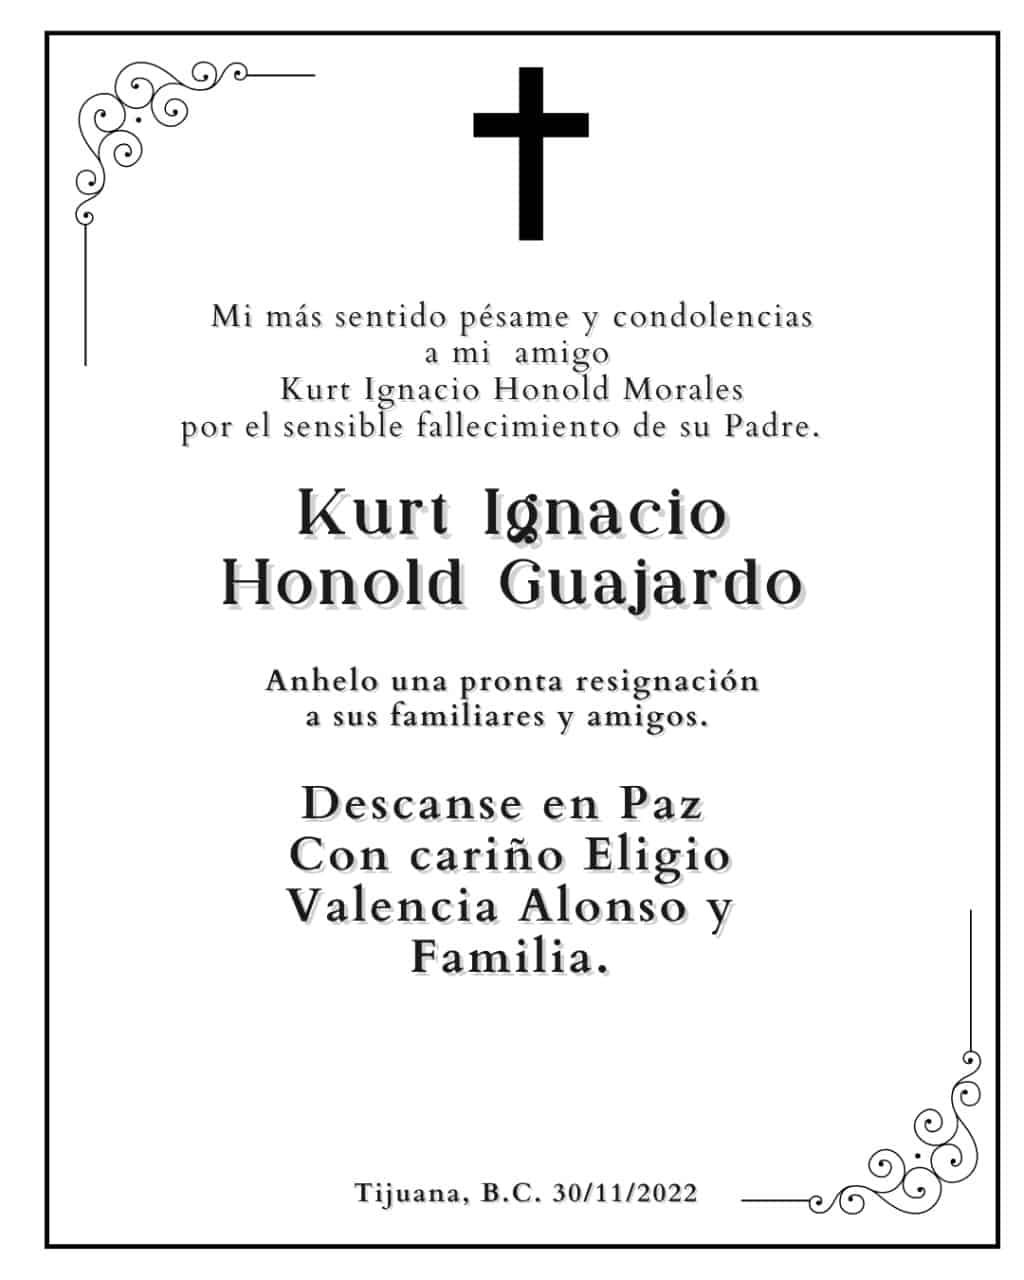 Kurt Ignacio Honold Guajardo